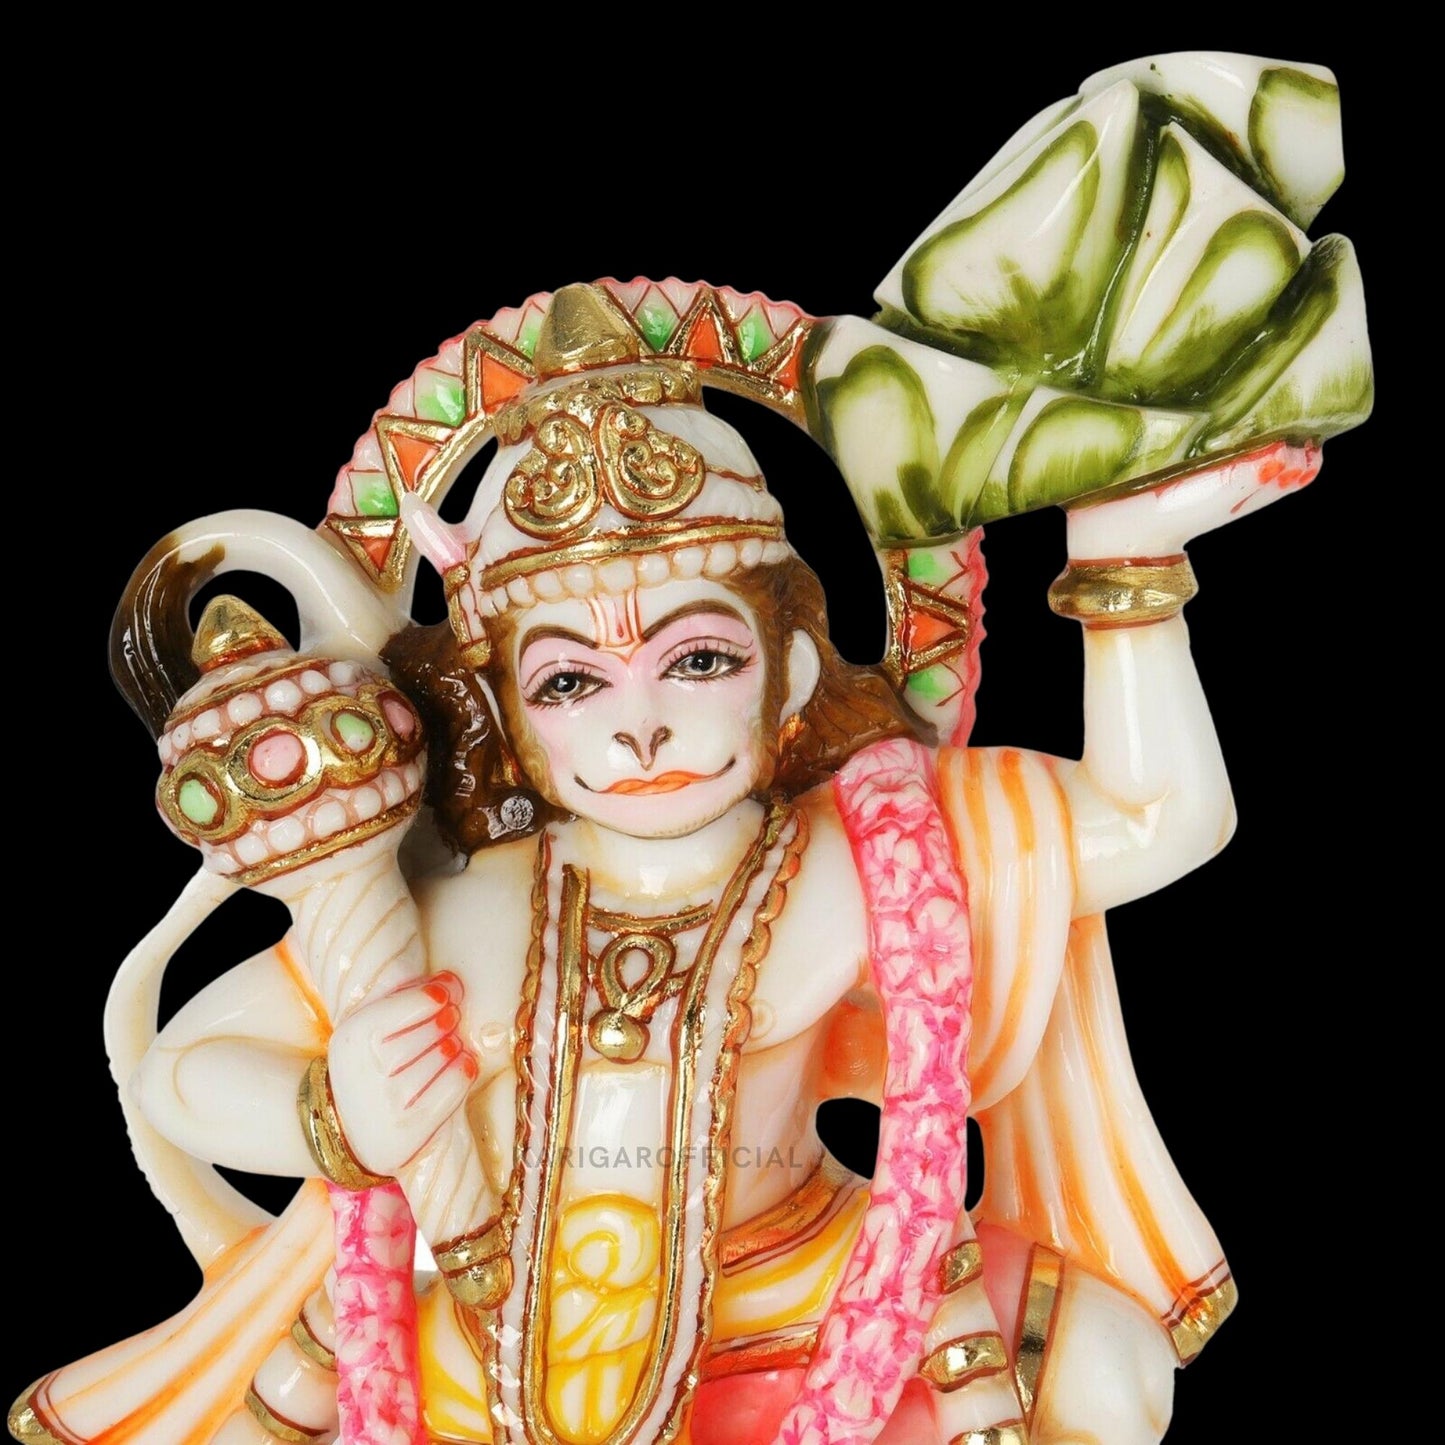 Estatua de Lord Hanuman, figura de Lord Hanuman de bendición de mármol pintada a mano de 12 pulgadas, ídolo de Hanuman. Dios mono hindú de la devoción, la fuerza, el celibato y el bhakti